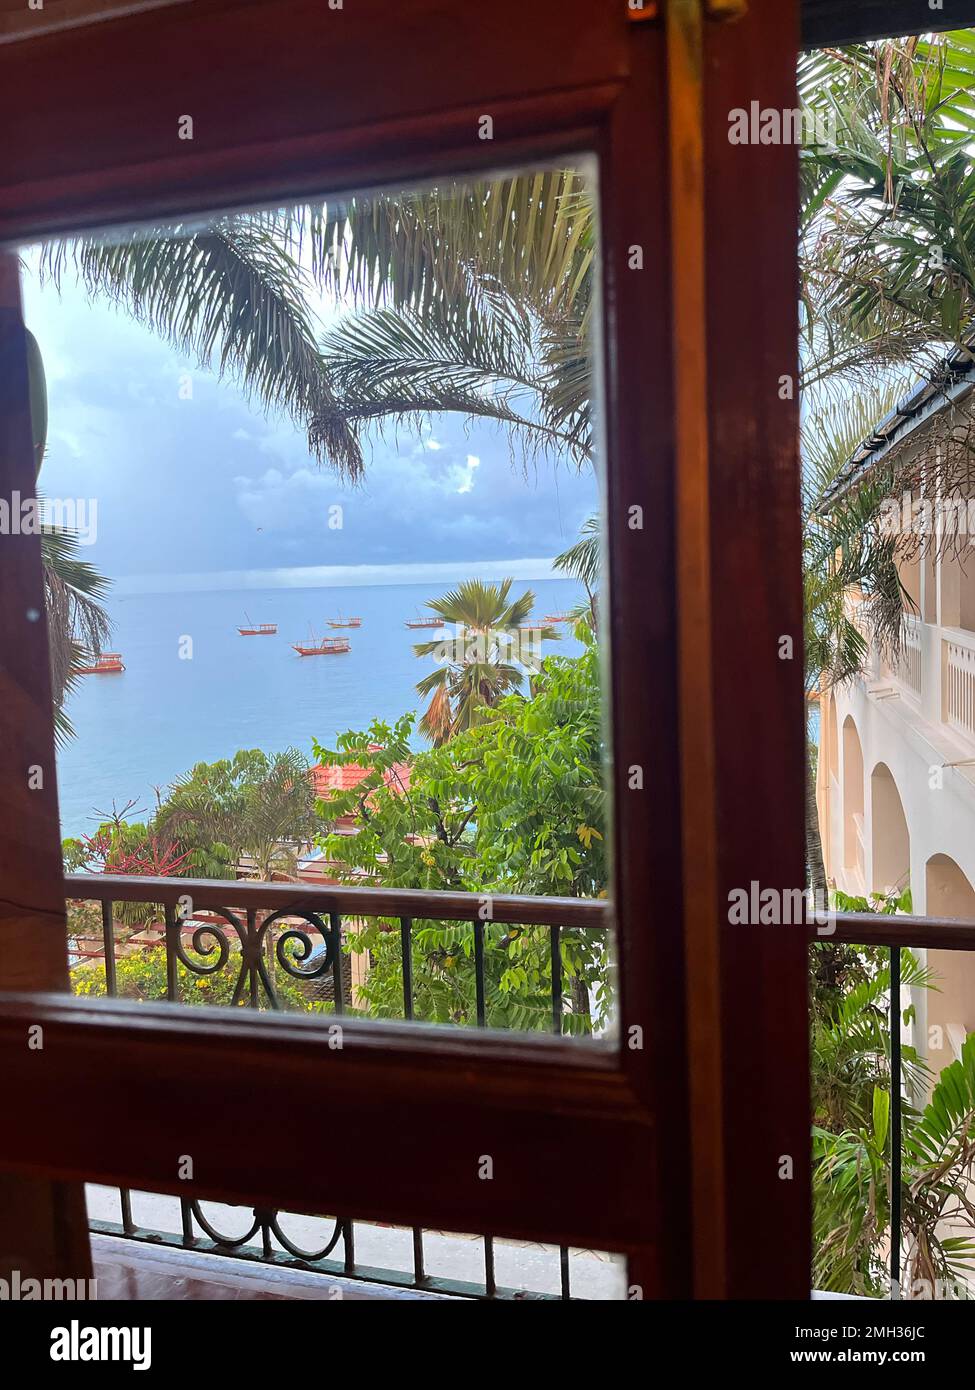 Une belle vue depuis une chambre d'hôtel. Vue fenêtre sur une plage bleue avec des bateaux à voile et quelques palmiers et plantes situés à Zanzibar, Tanzanie. Banque D'Images